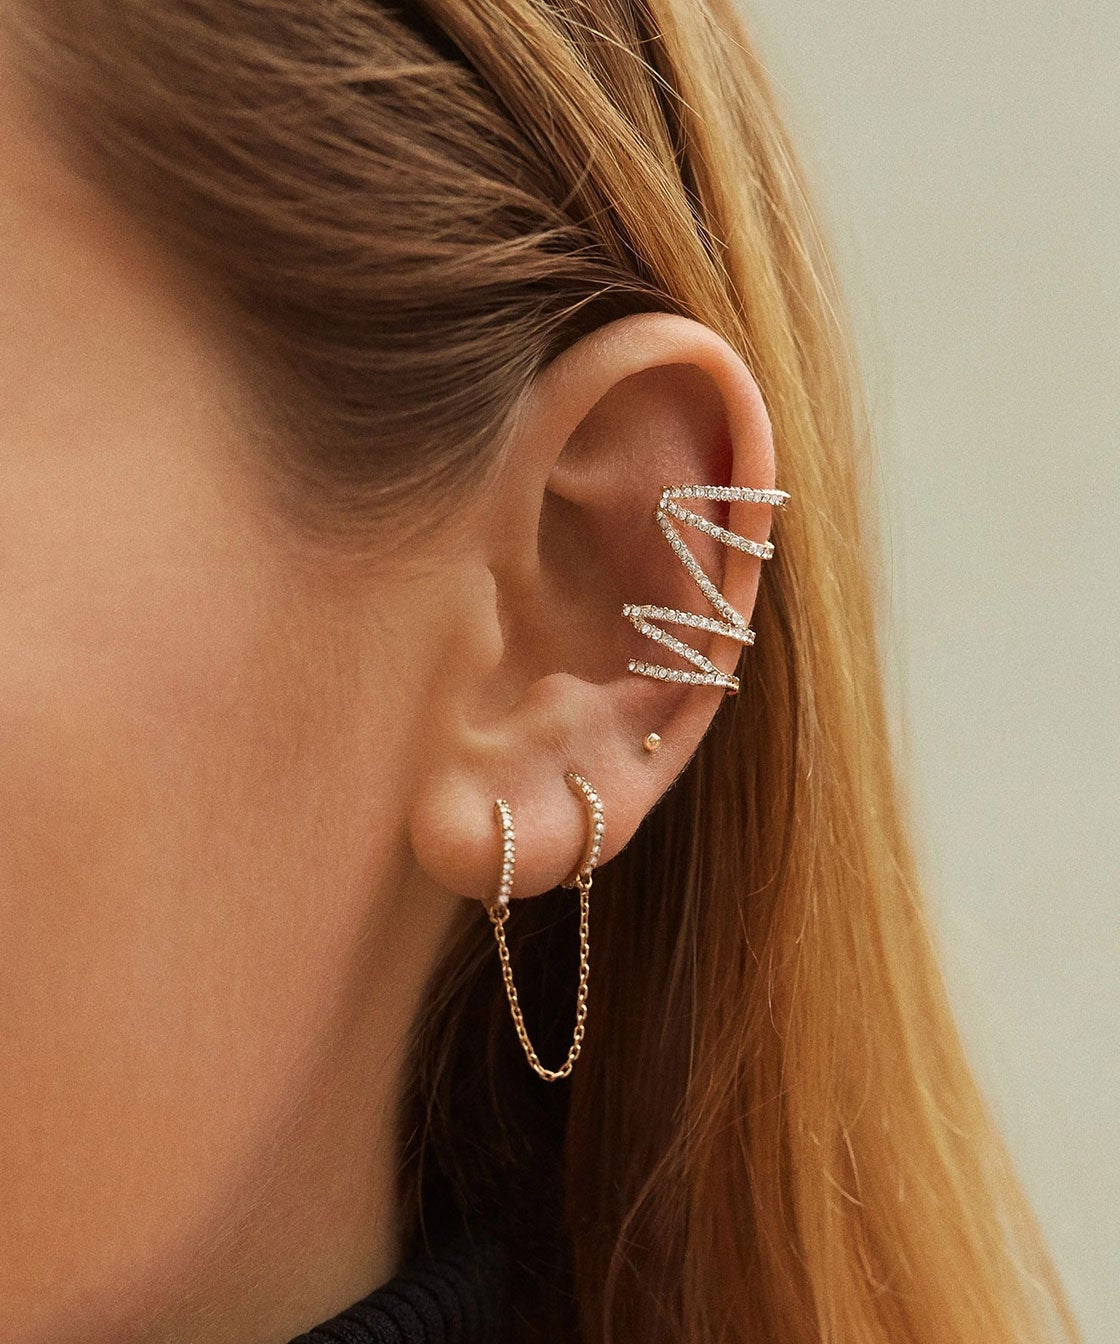 How To Wear Ear Cuffs - Best Jewelry 